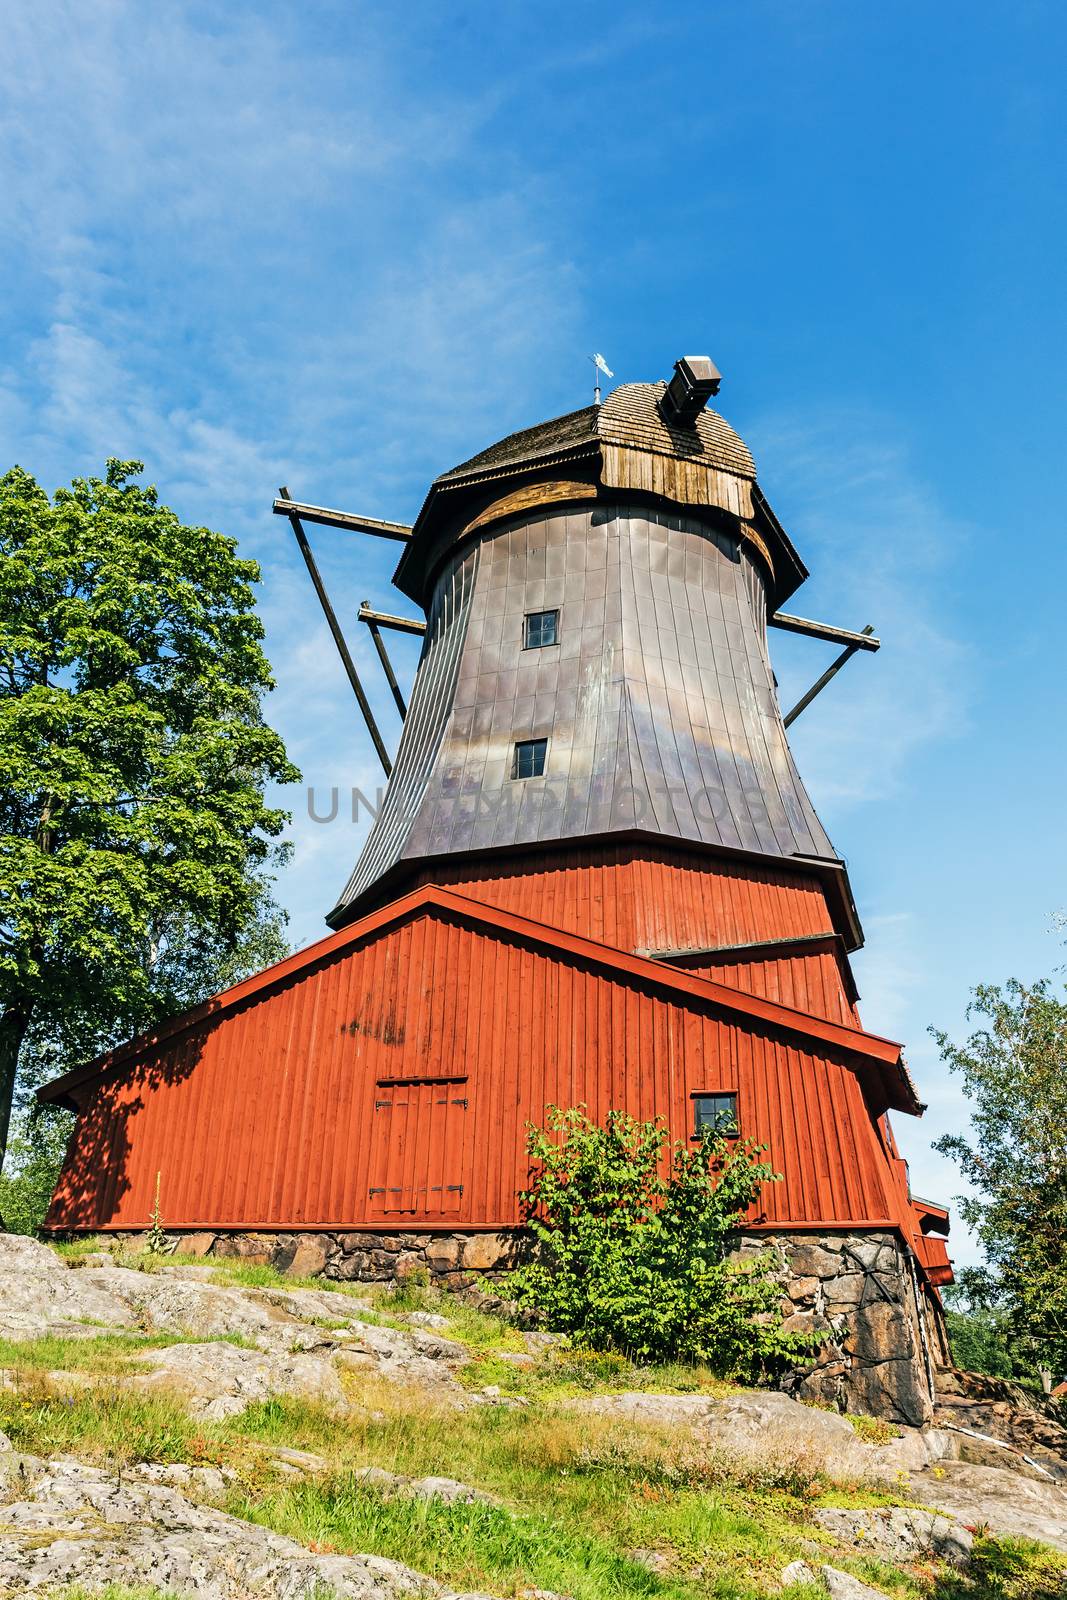 Dutch style ancient windmill by pawel_szczepanski